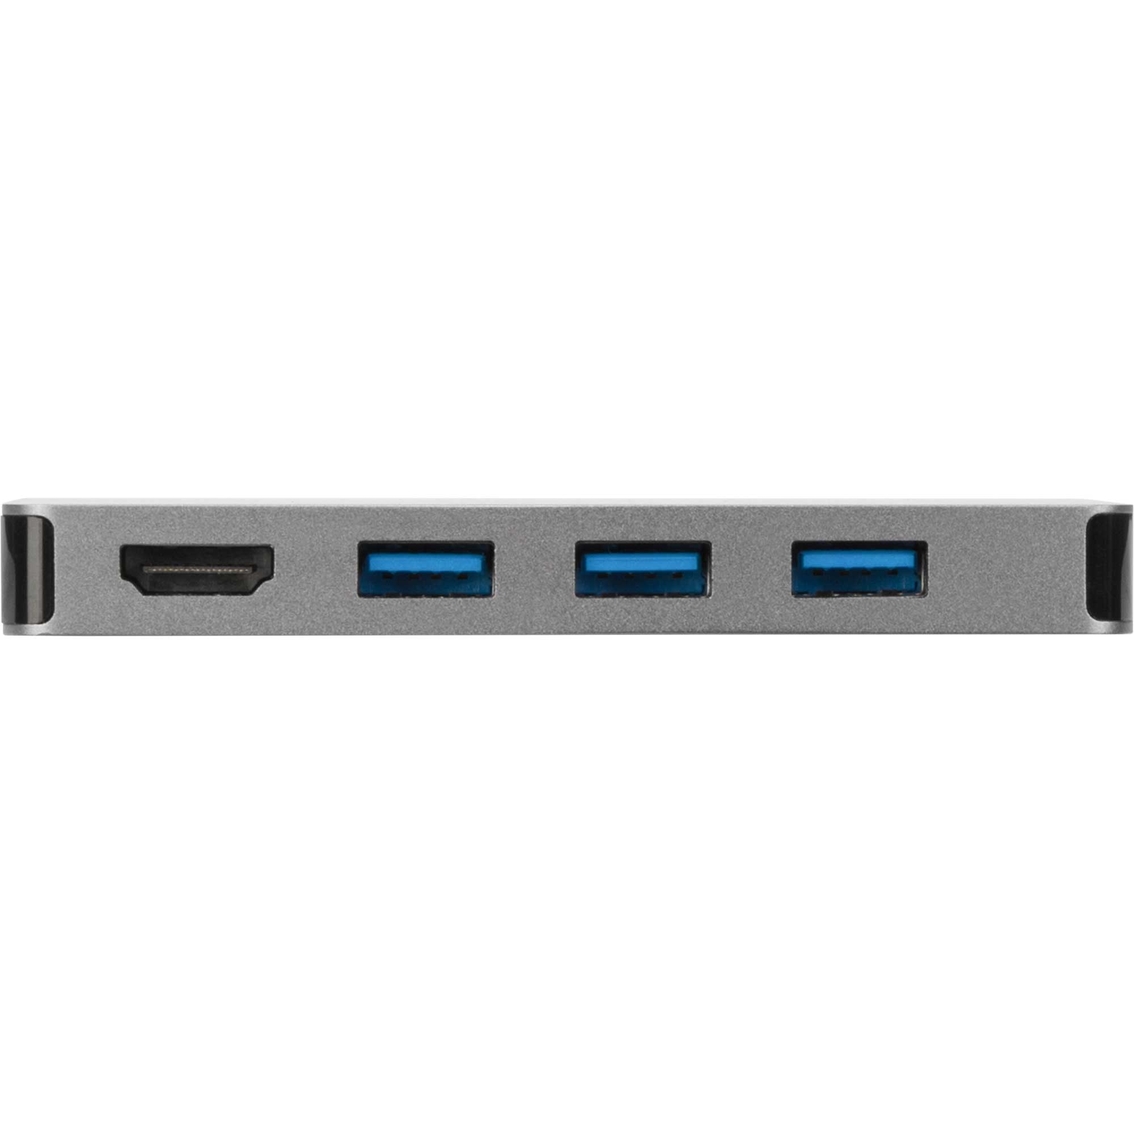 Targus USB C Single Video Multi Port Hub - Image 5 of 7